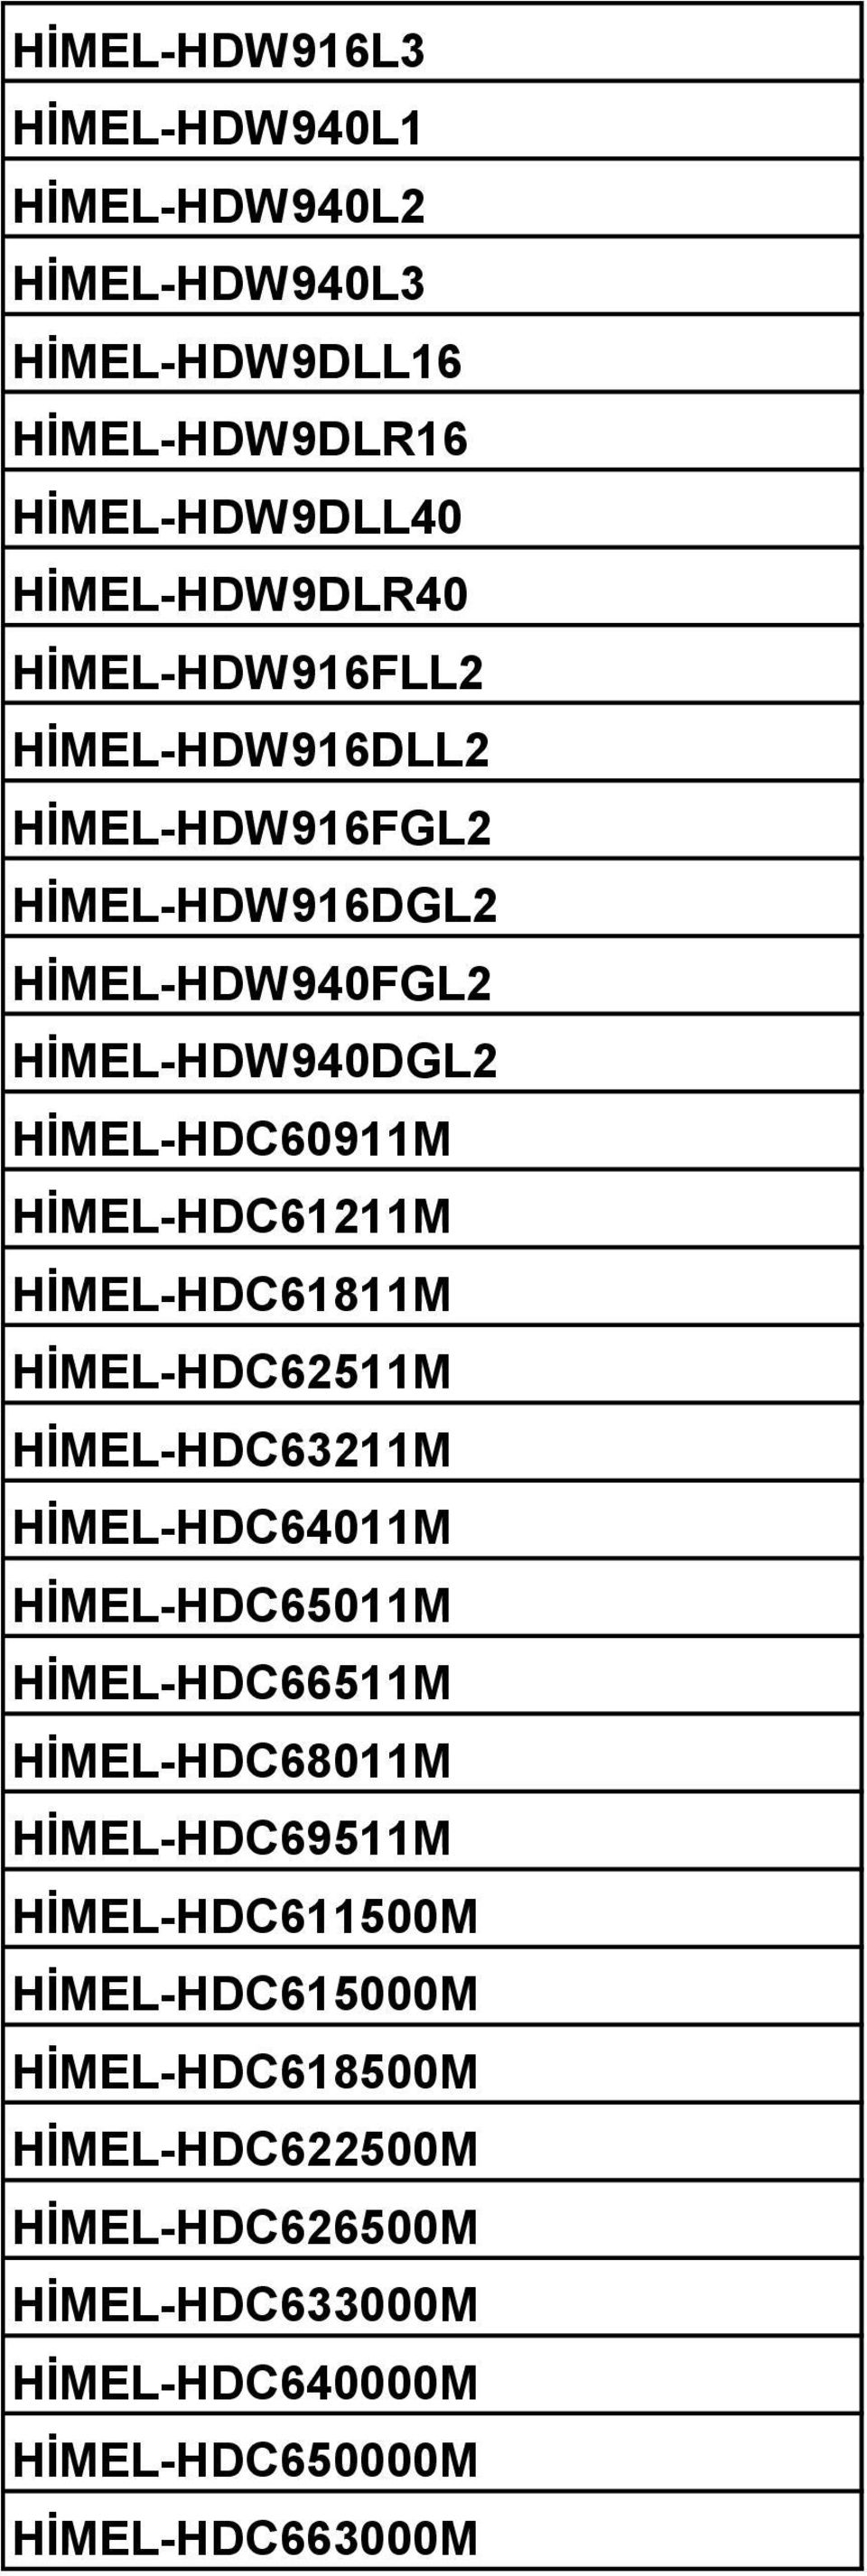 HİMEL-HDC61811M HİMEL-HDC62511M HİMEL-HDC63211M HİMEL-HDC64011M HİMEL-HDC65011M HİMEL-HDC66511M HİMEL-HDC68011M HİMEL-HDC69511M